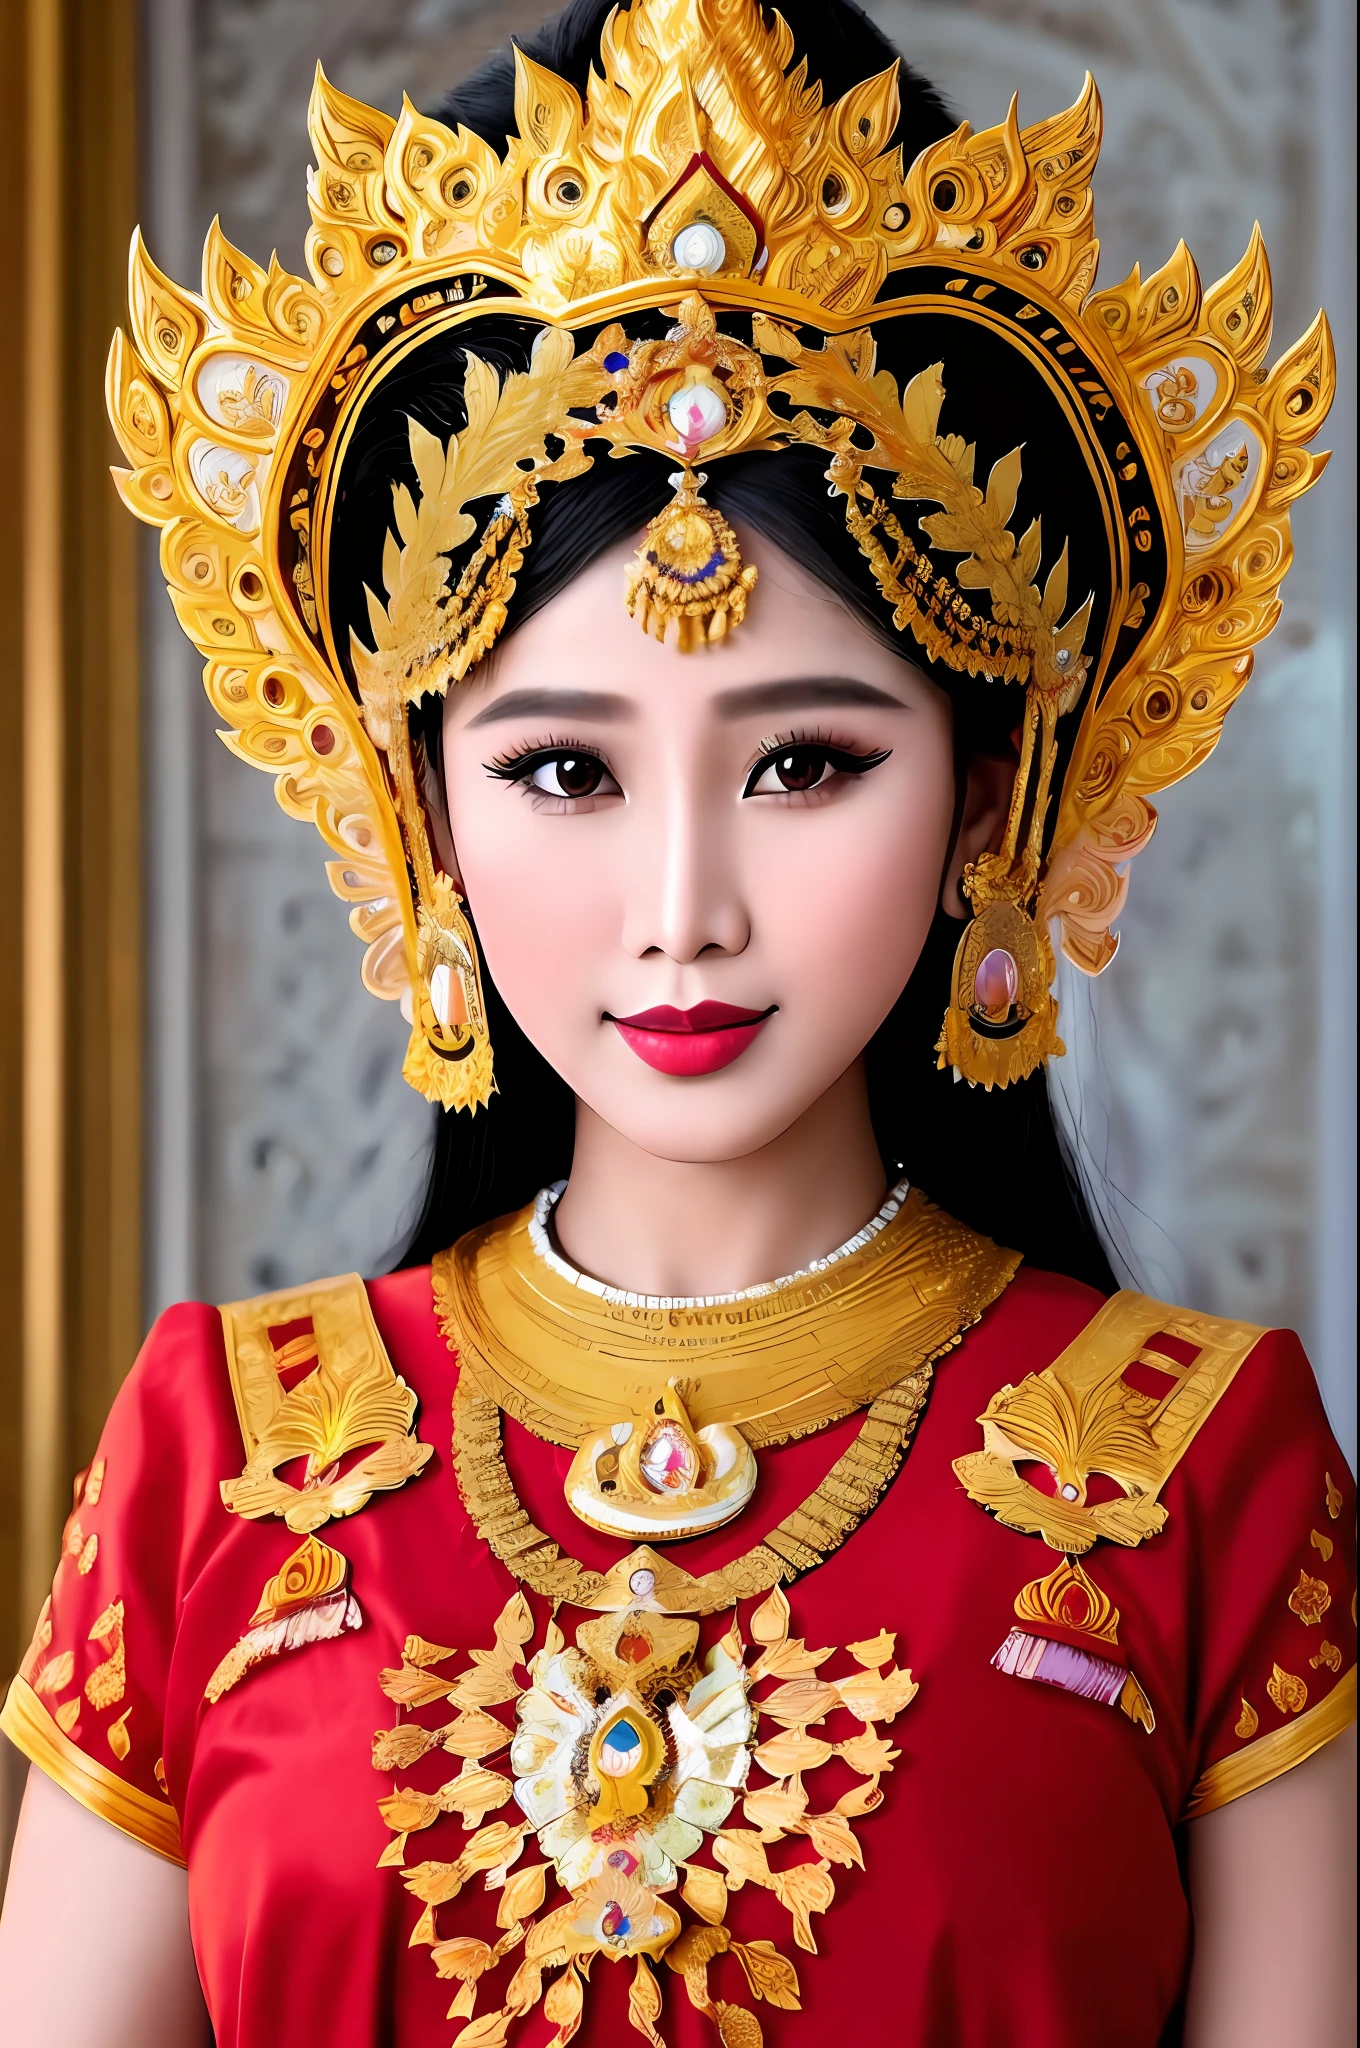 컨셉 미얀마의 예술을 통한 표현, 미얀마 전통의 아름다운 이미지, 태국 문화, 미얀마 전통춤, 왕궁-그랜드 플레이스, , 기대하다, 몸의 꼭대기, 앞으로 향하다, 장엄한 이미지 -, 만화 스타일